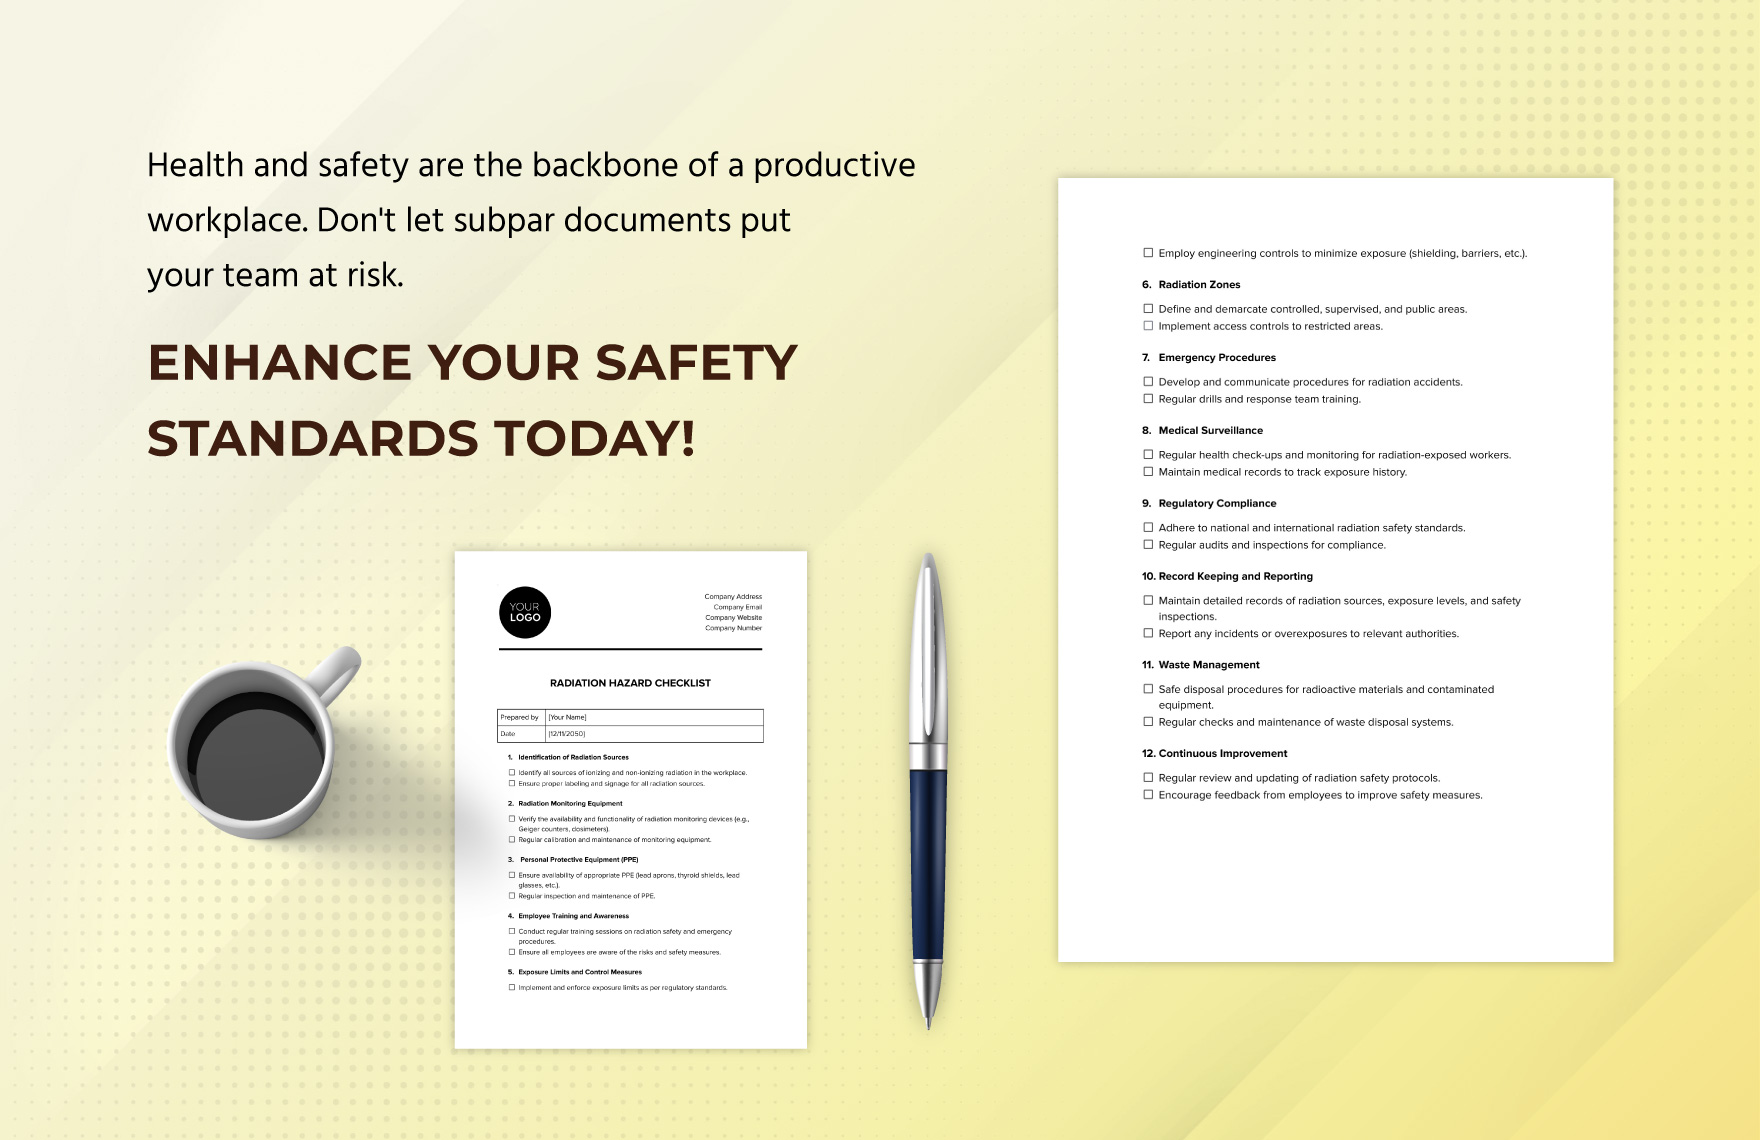 Radiation Hazard Checklist Template